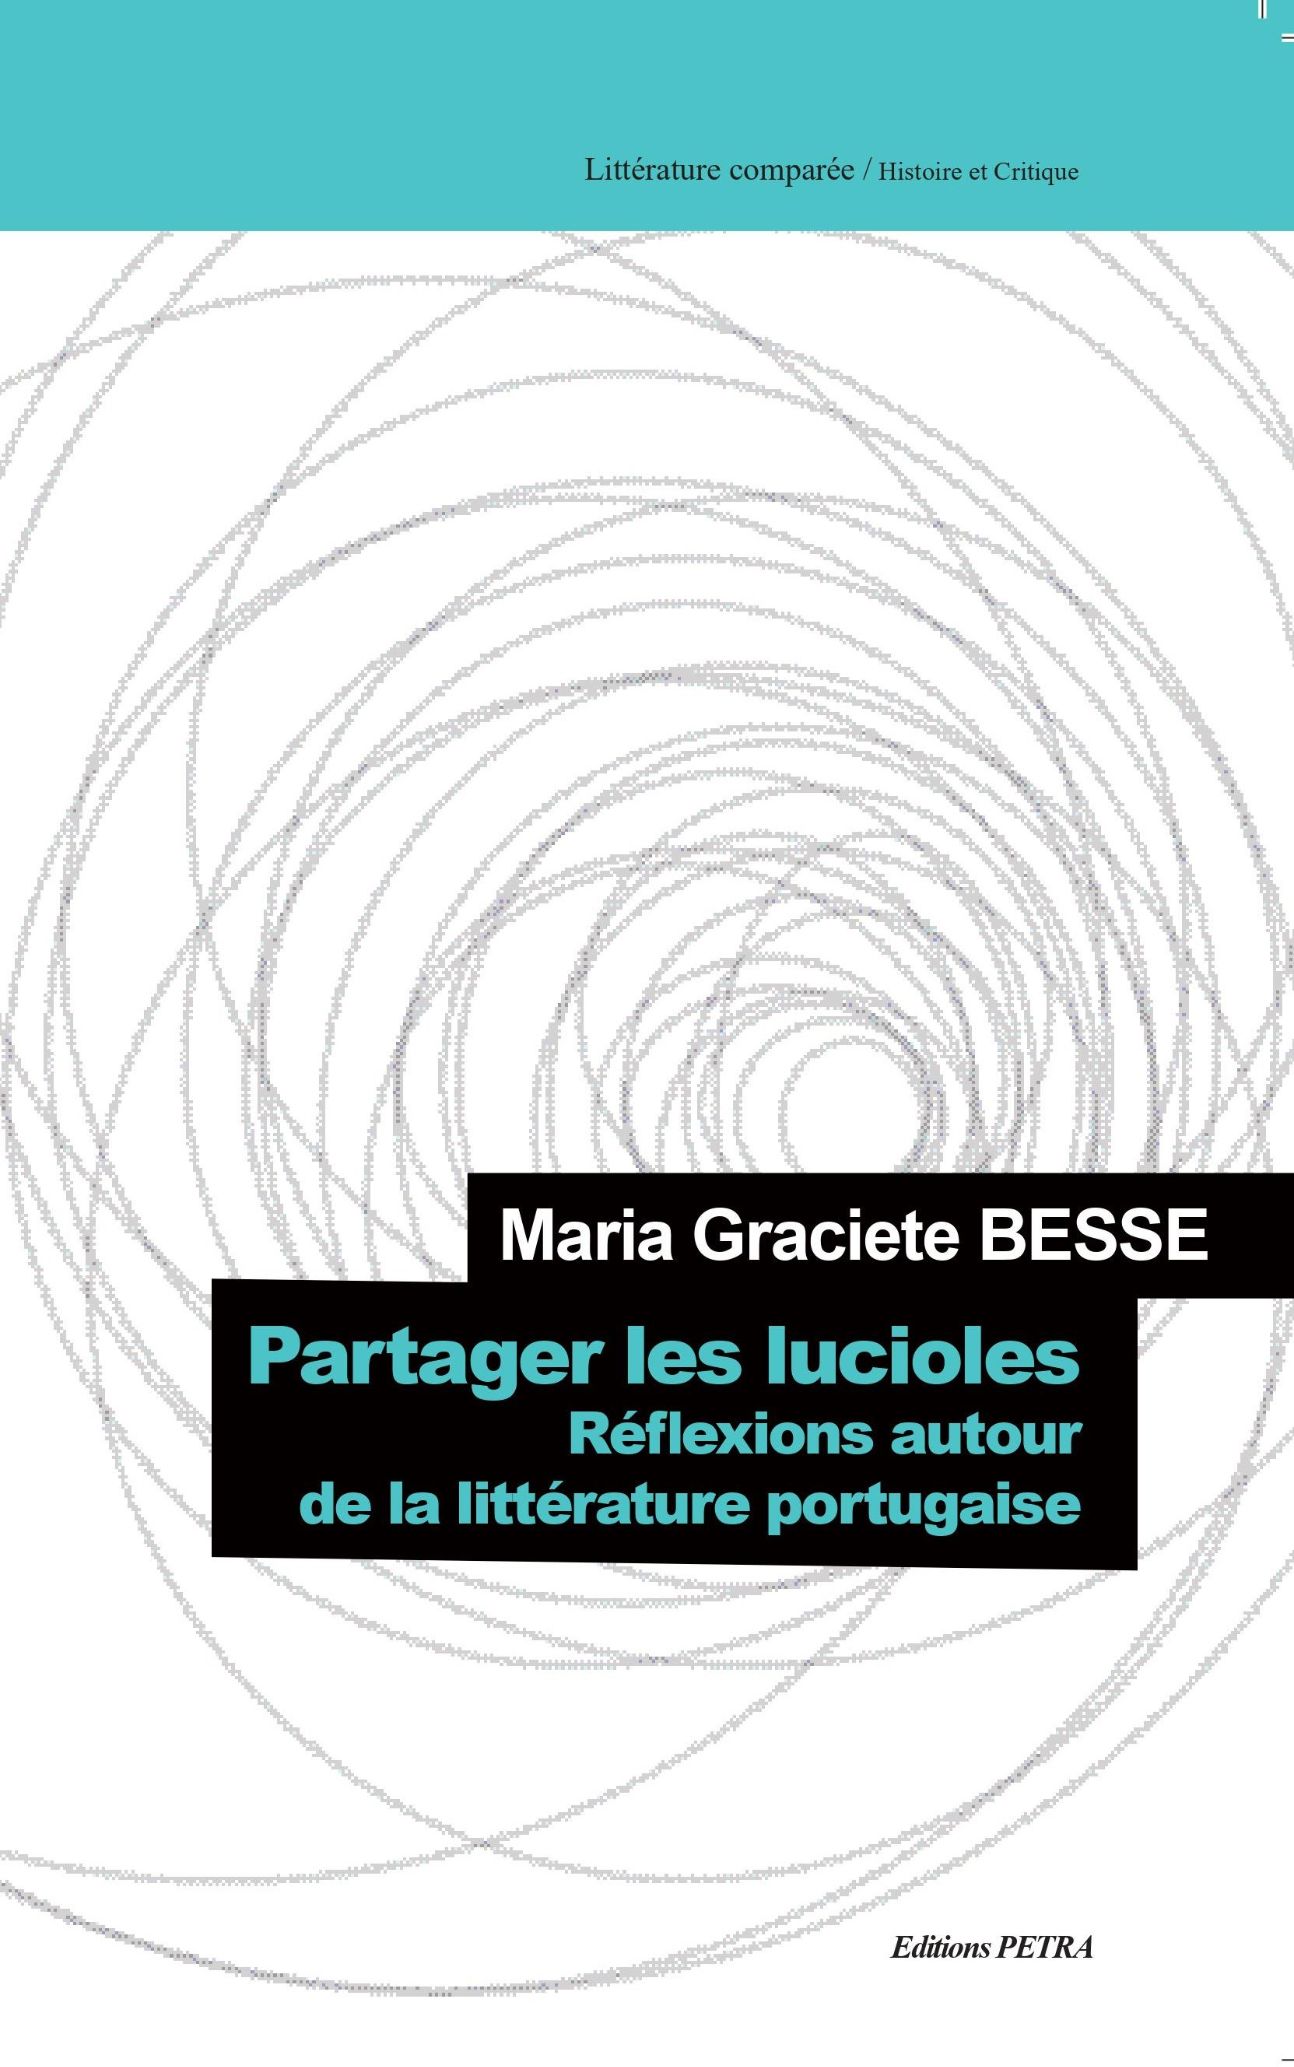 Maria Graciete Besse, Partager les lucioles. Réflexions autour de la littérature portugaise